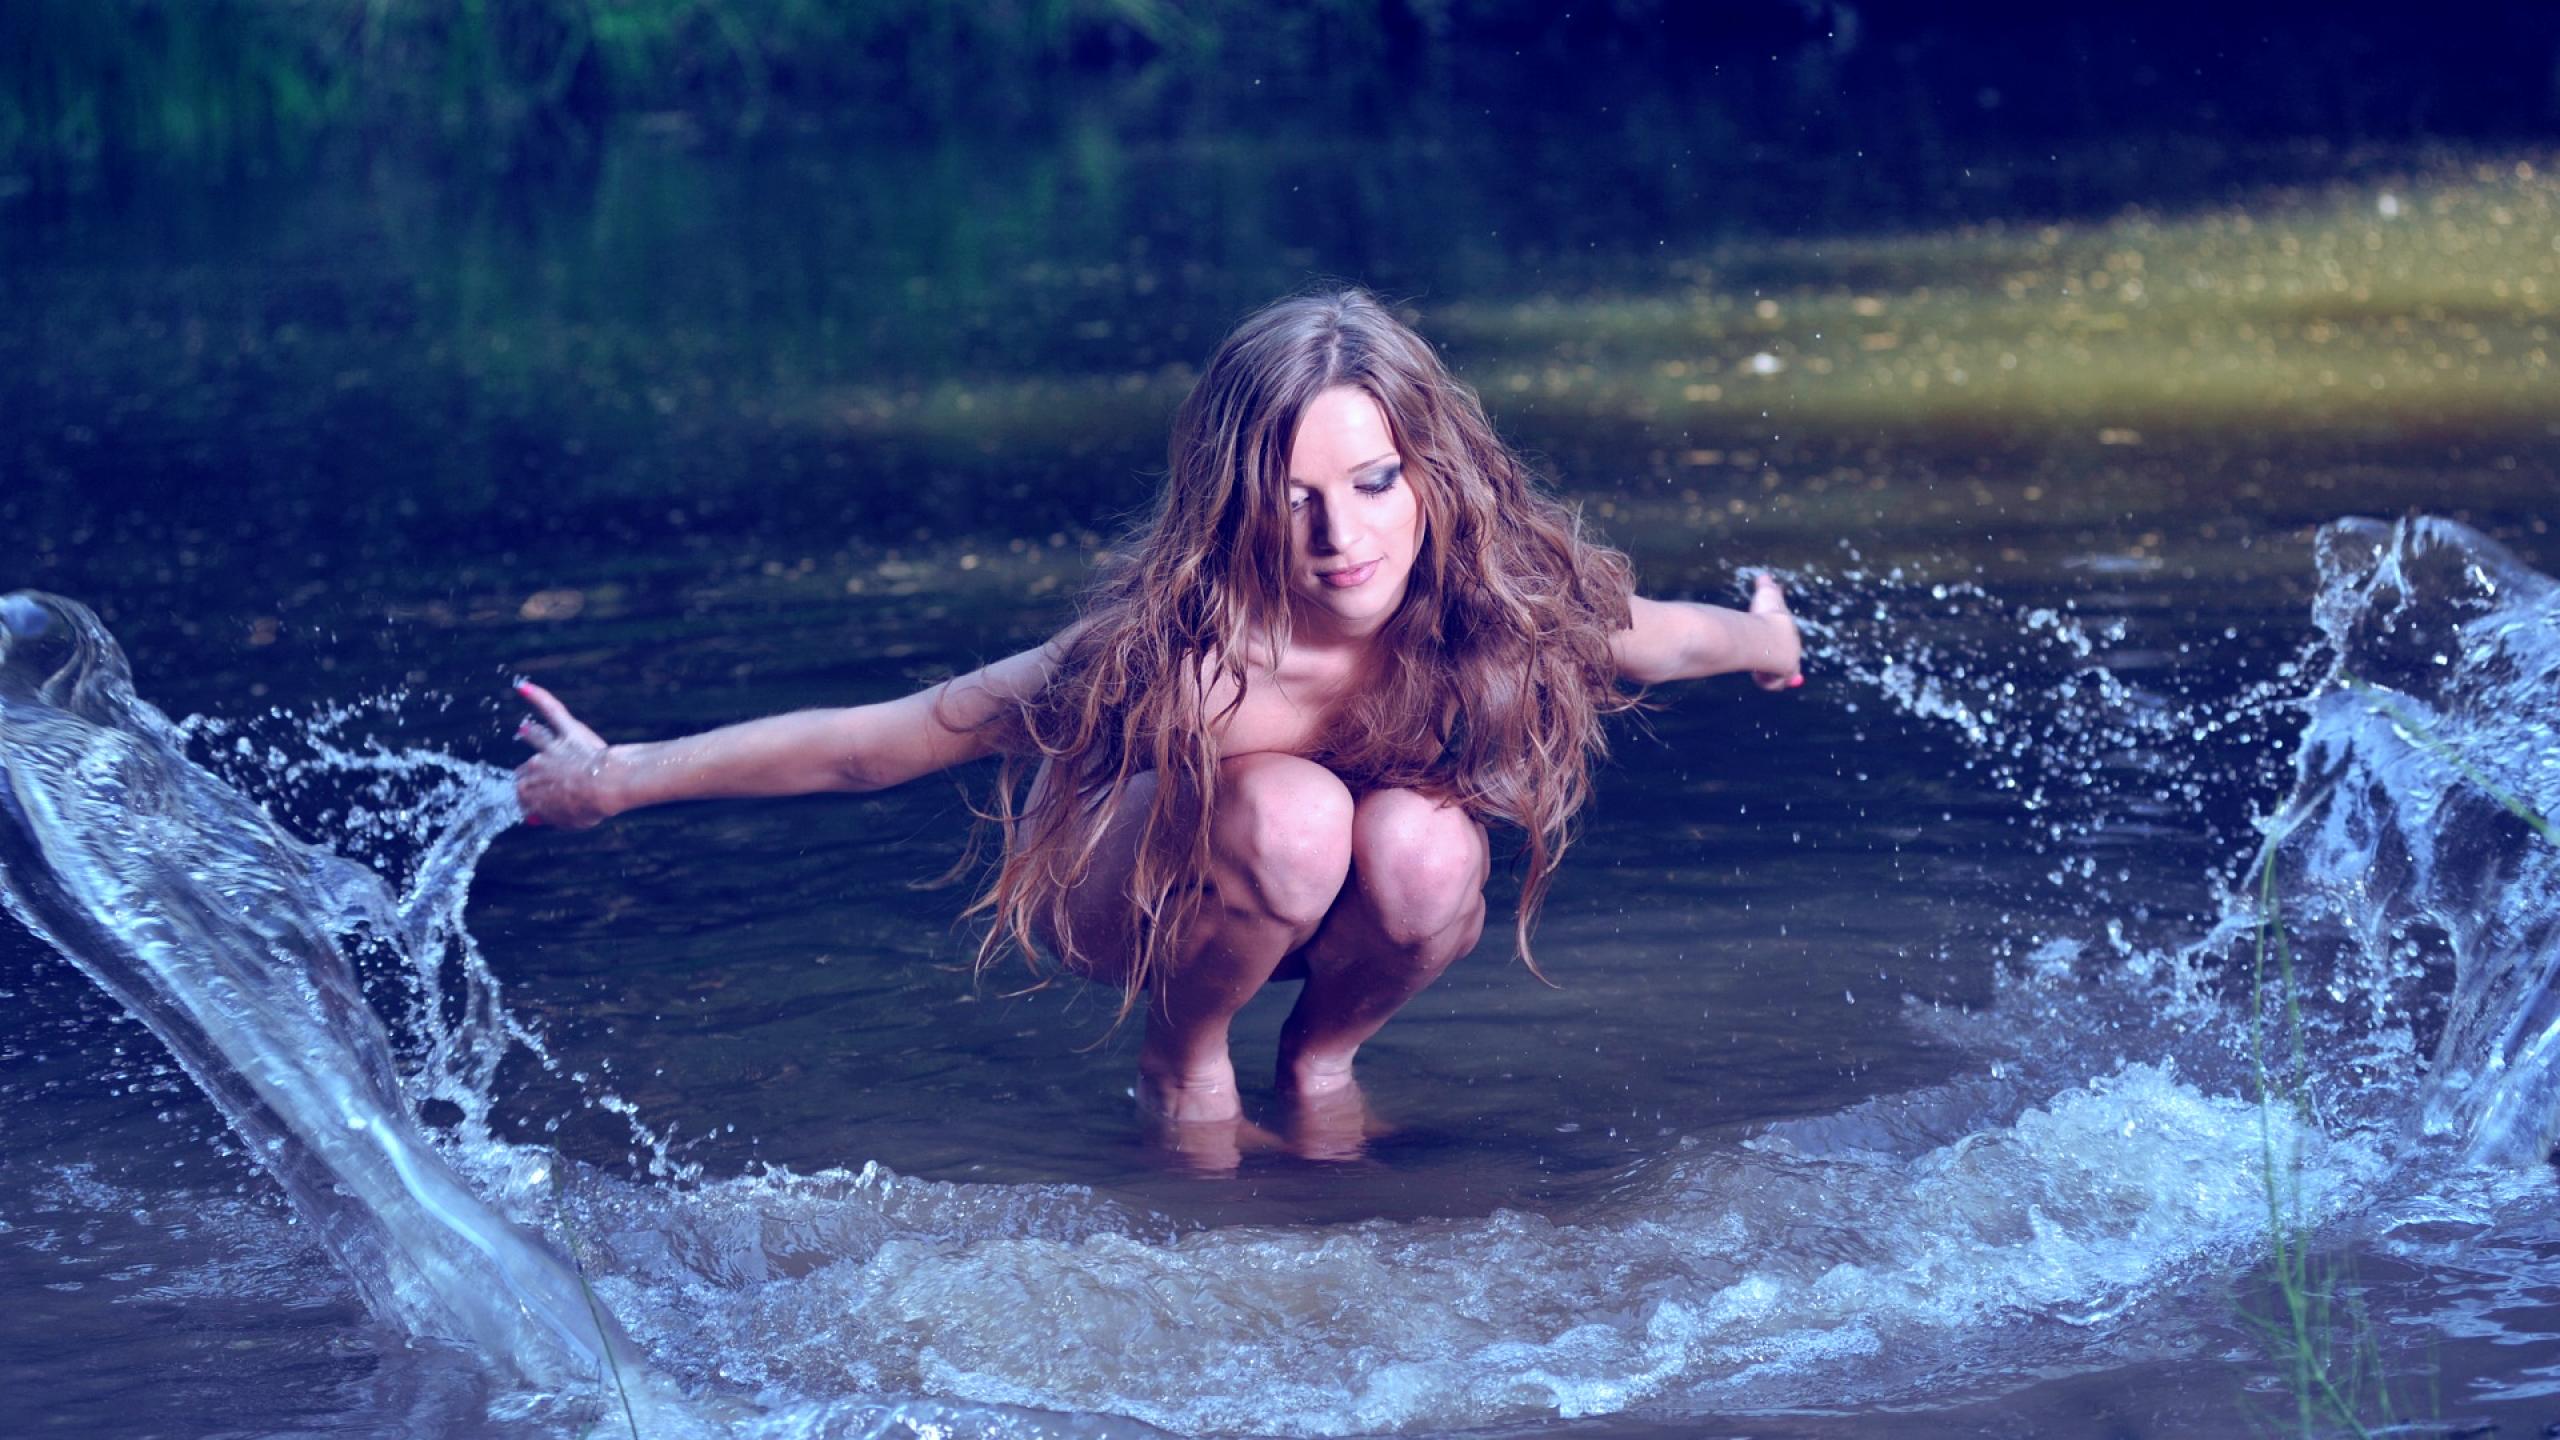 Free photo: Girl In Water, Girl, Human